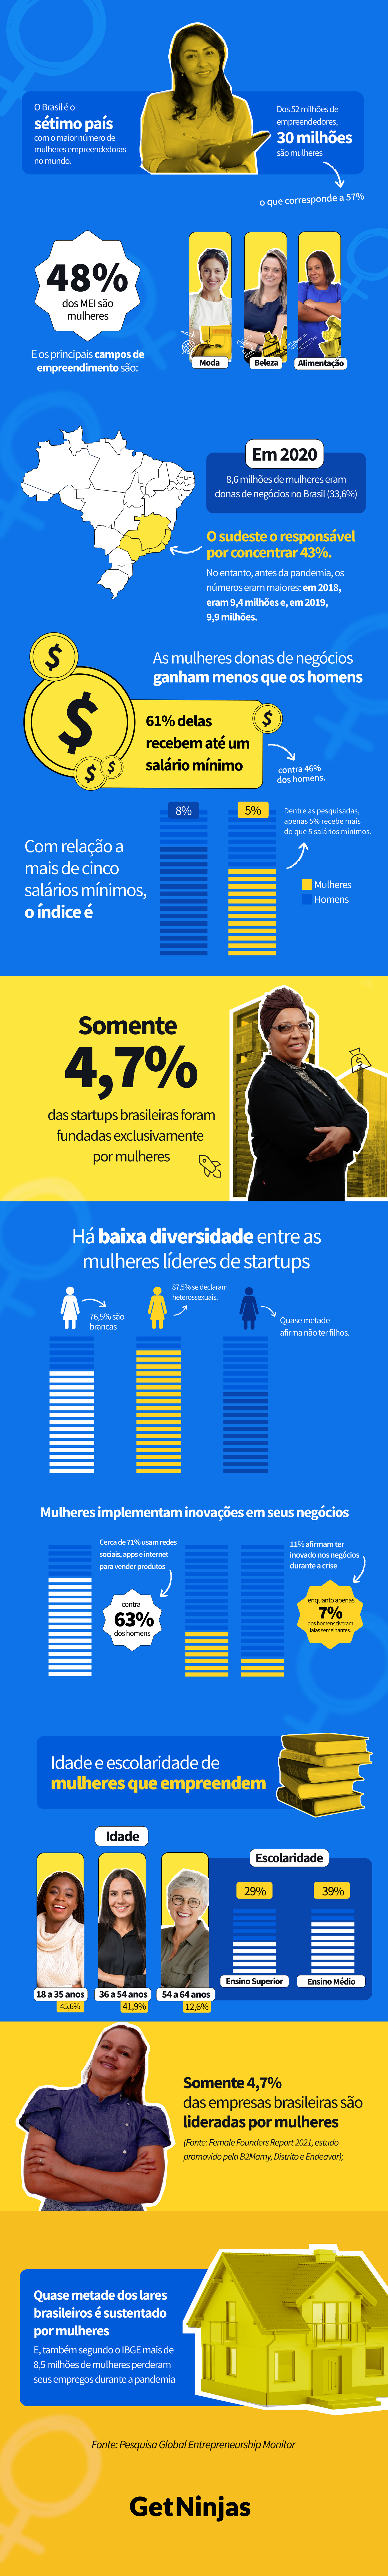 infográfico com informações e dados sobre a mulher e o empreendedorismo